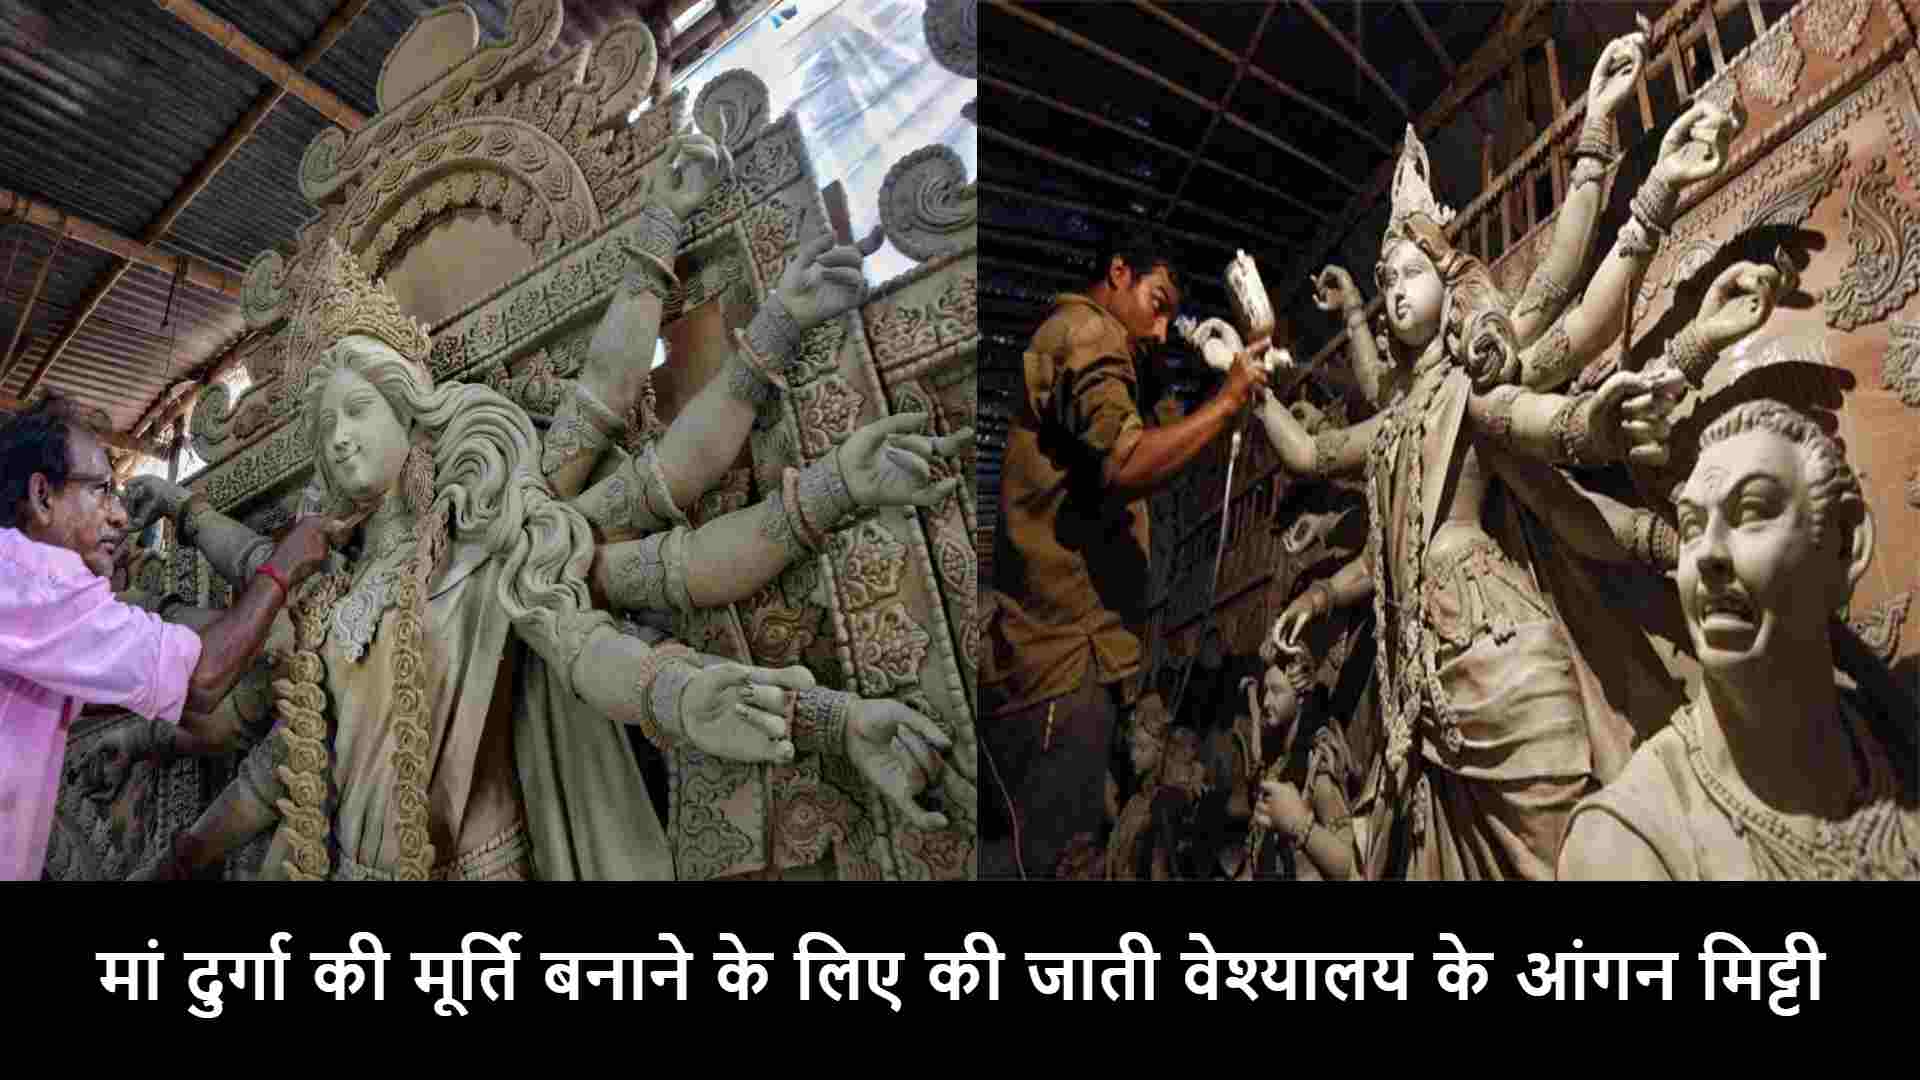 shardiya Navratri 2021, मां दुर्गा की मूर्ति बनाने के लिए ली जाती वेश्यालय के आंगन मिट्टी